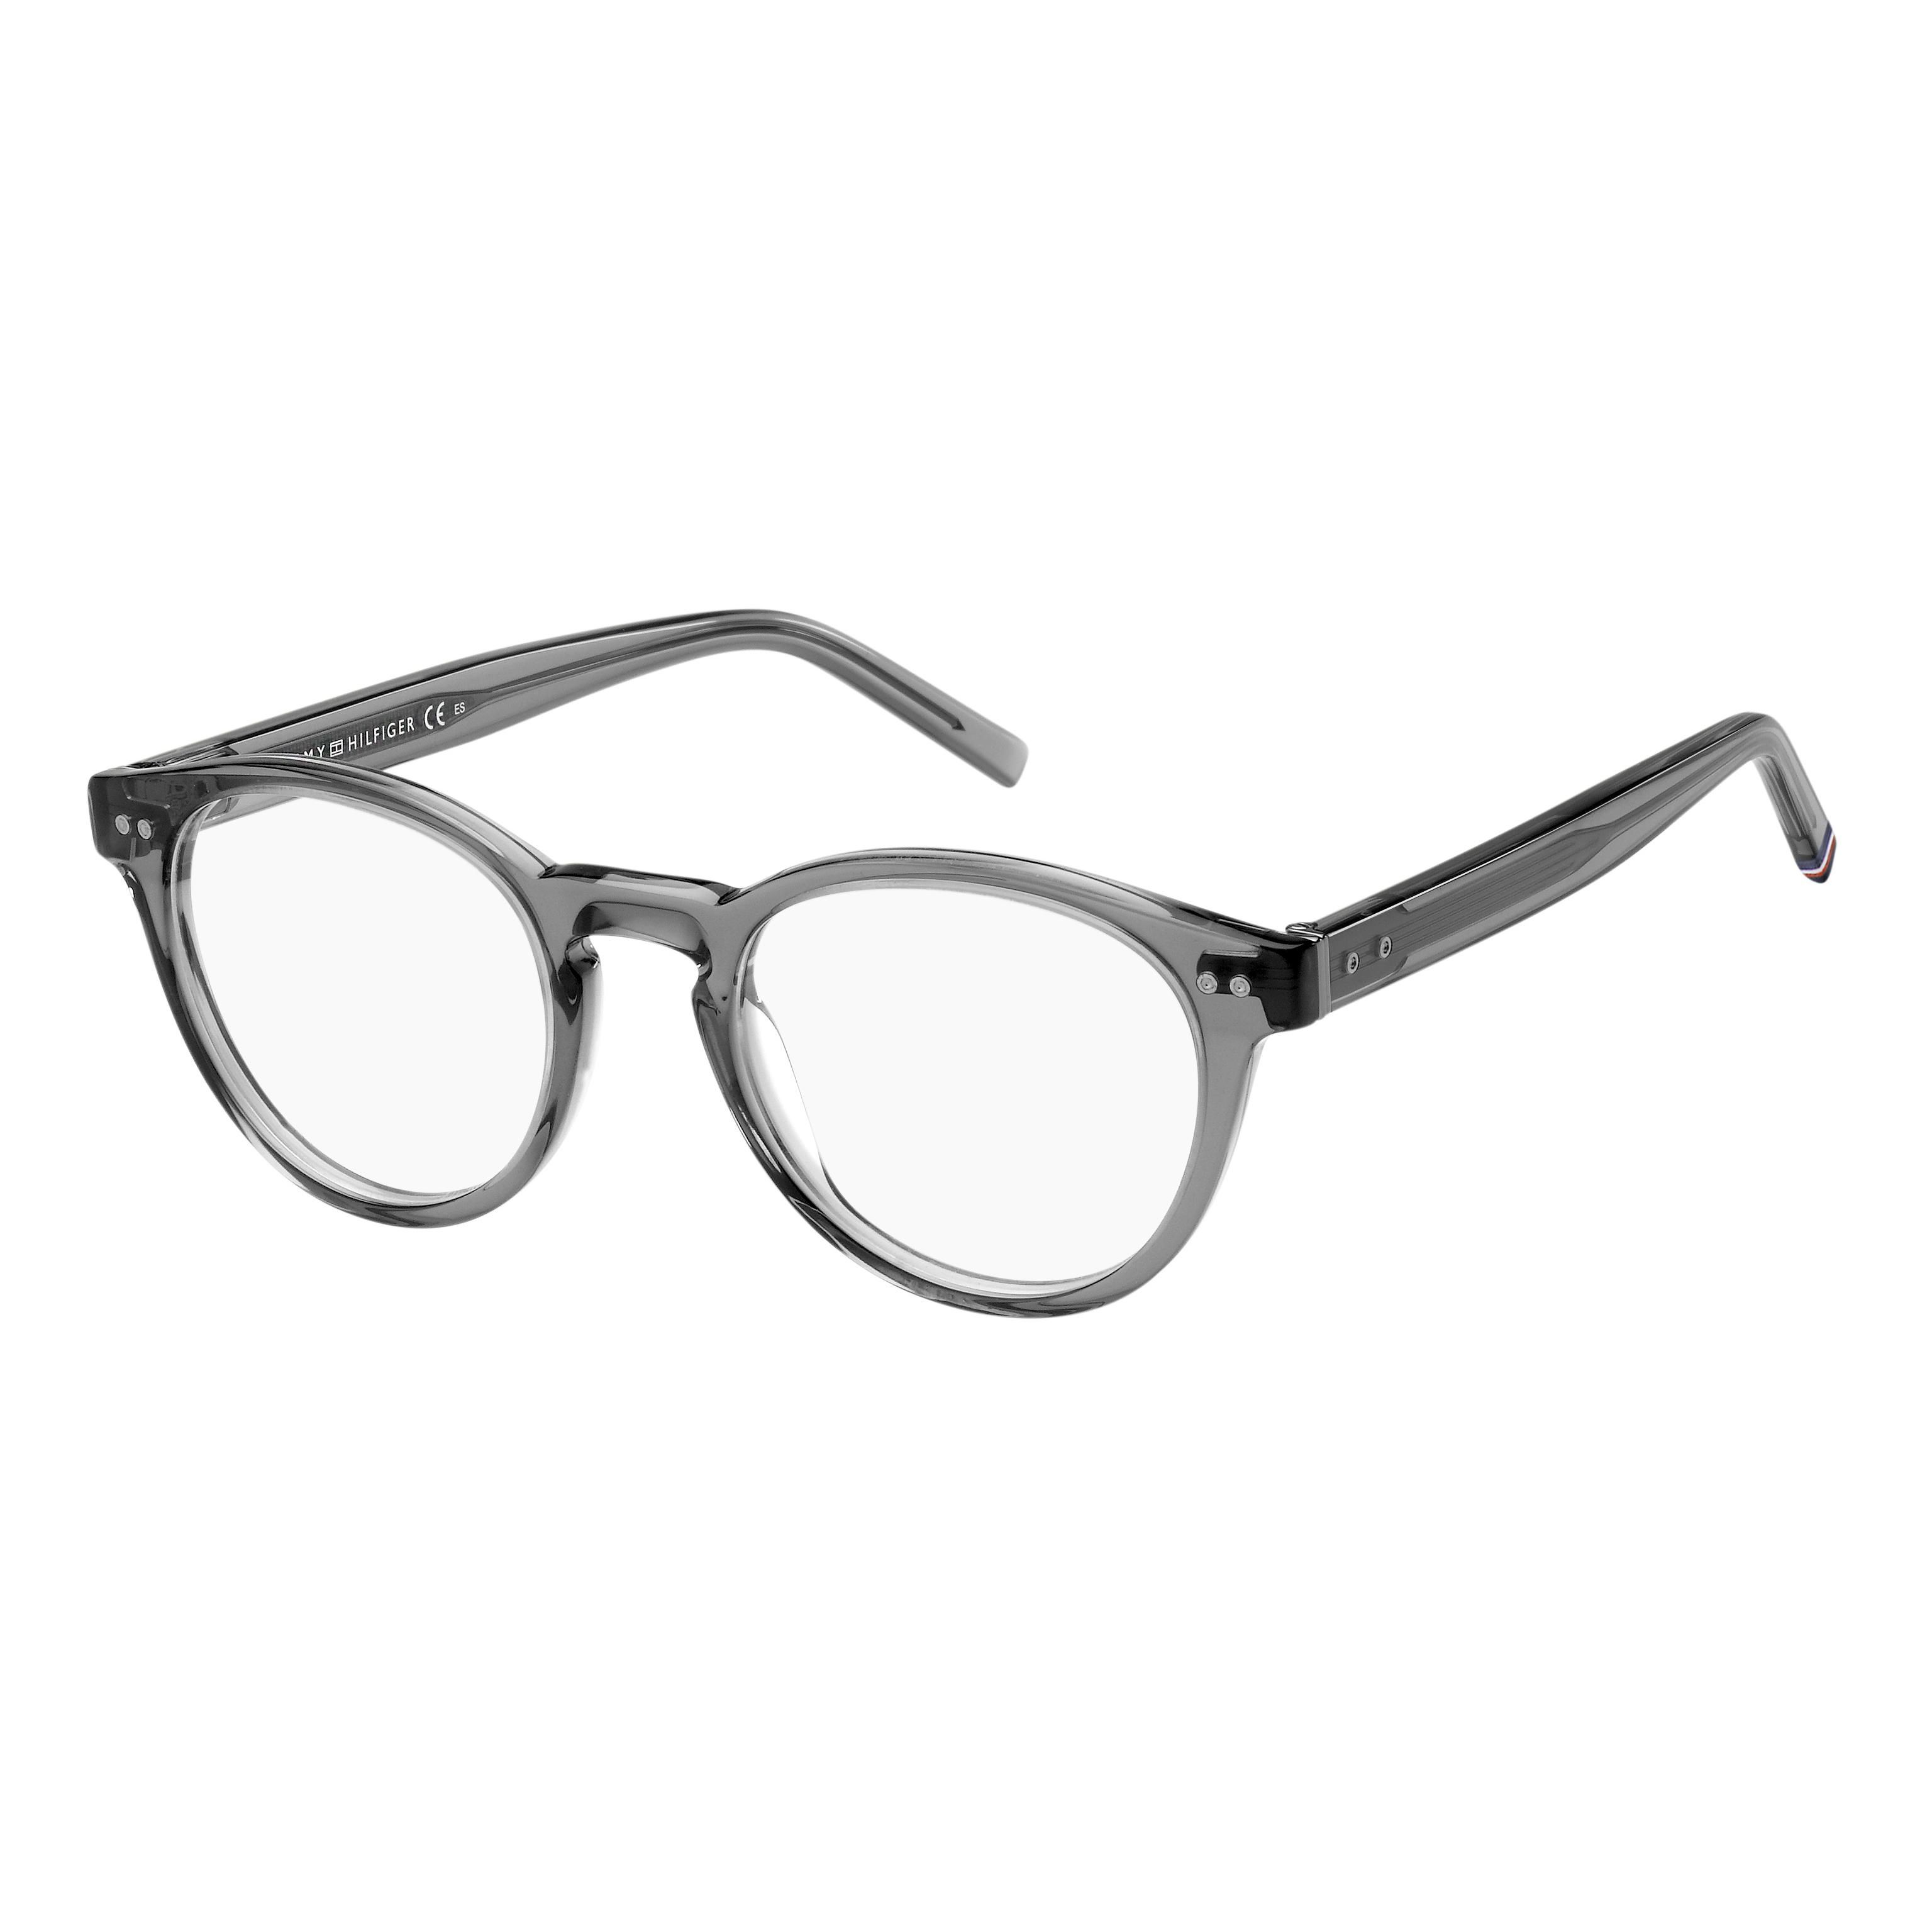 TH 1984 Round Eyeglasses KB7 - size 50